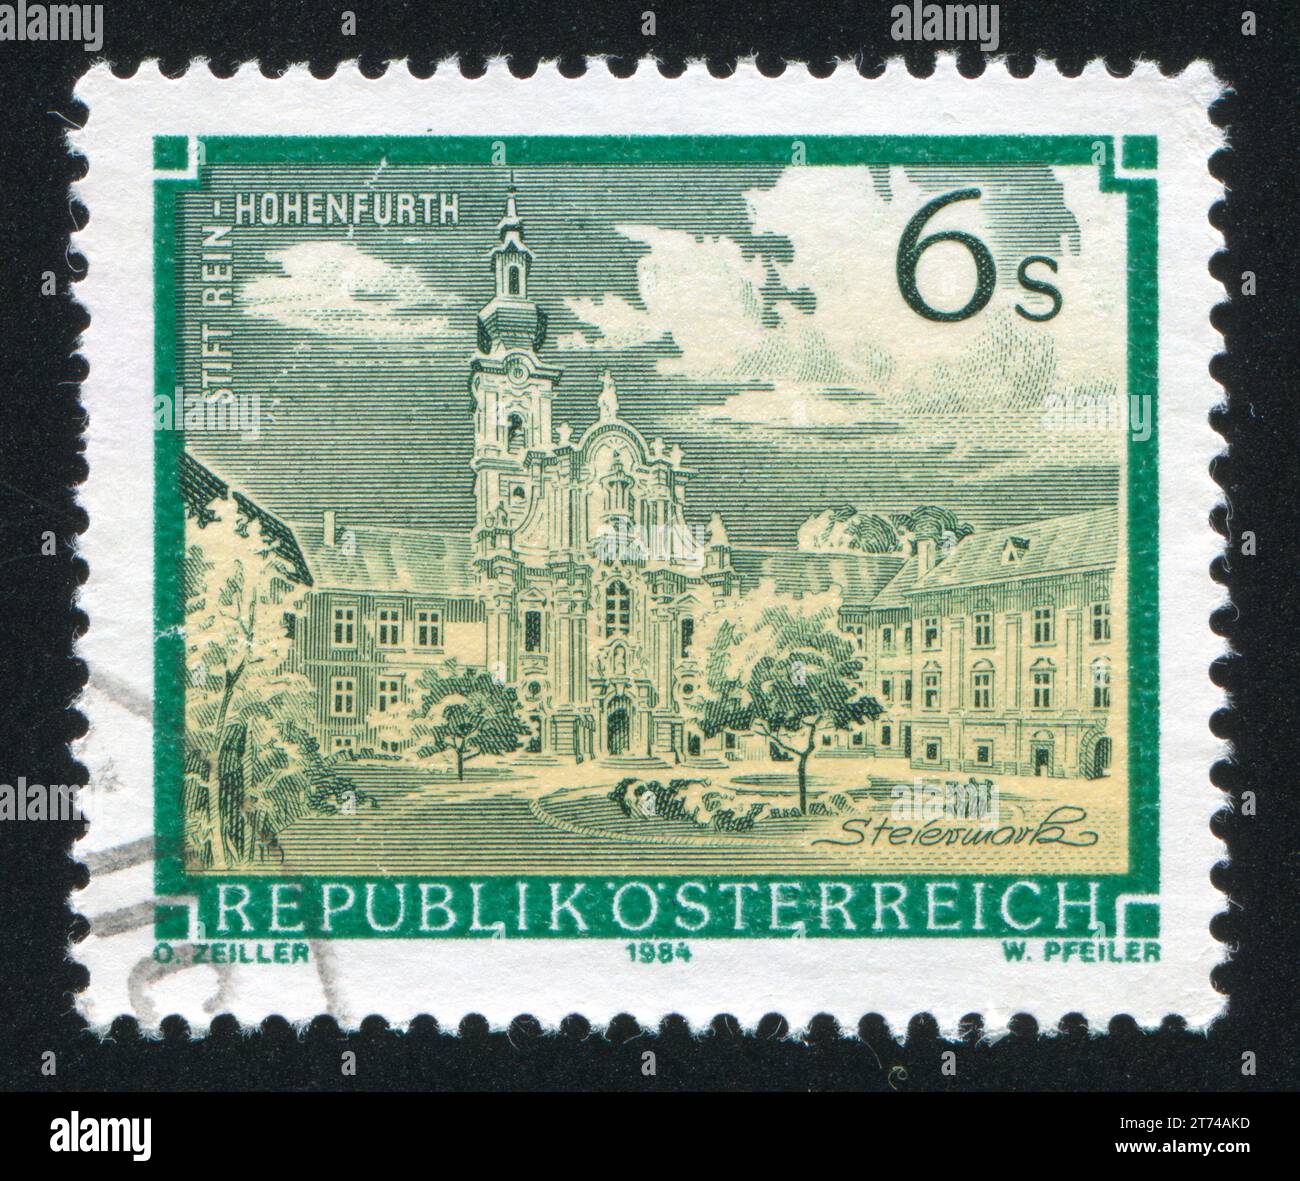 ÖSTERREICH - UM 1984: Briefmarke gedruckt von Österreich, zeigt rein Hohenfurth, um 1984 Stockfoto